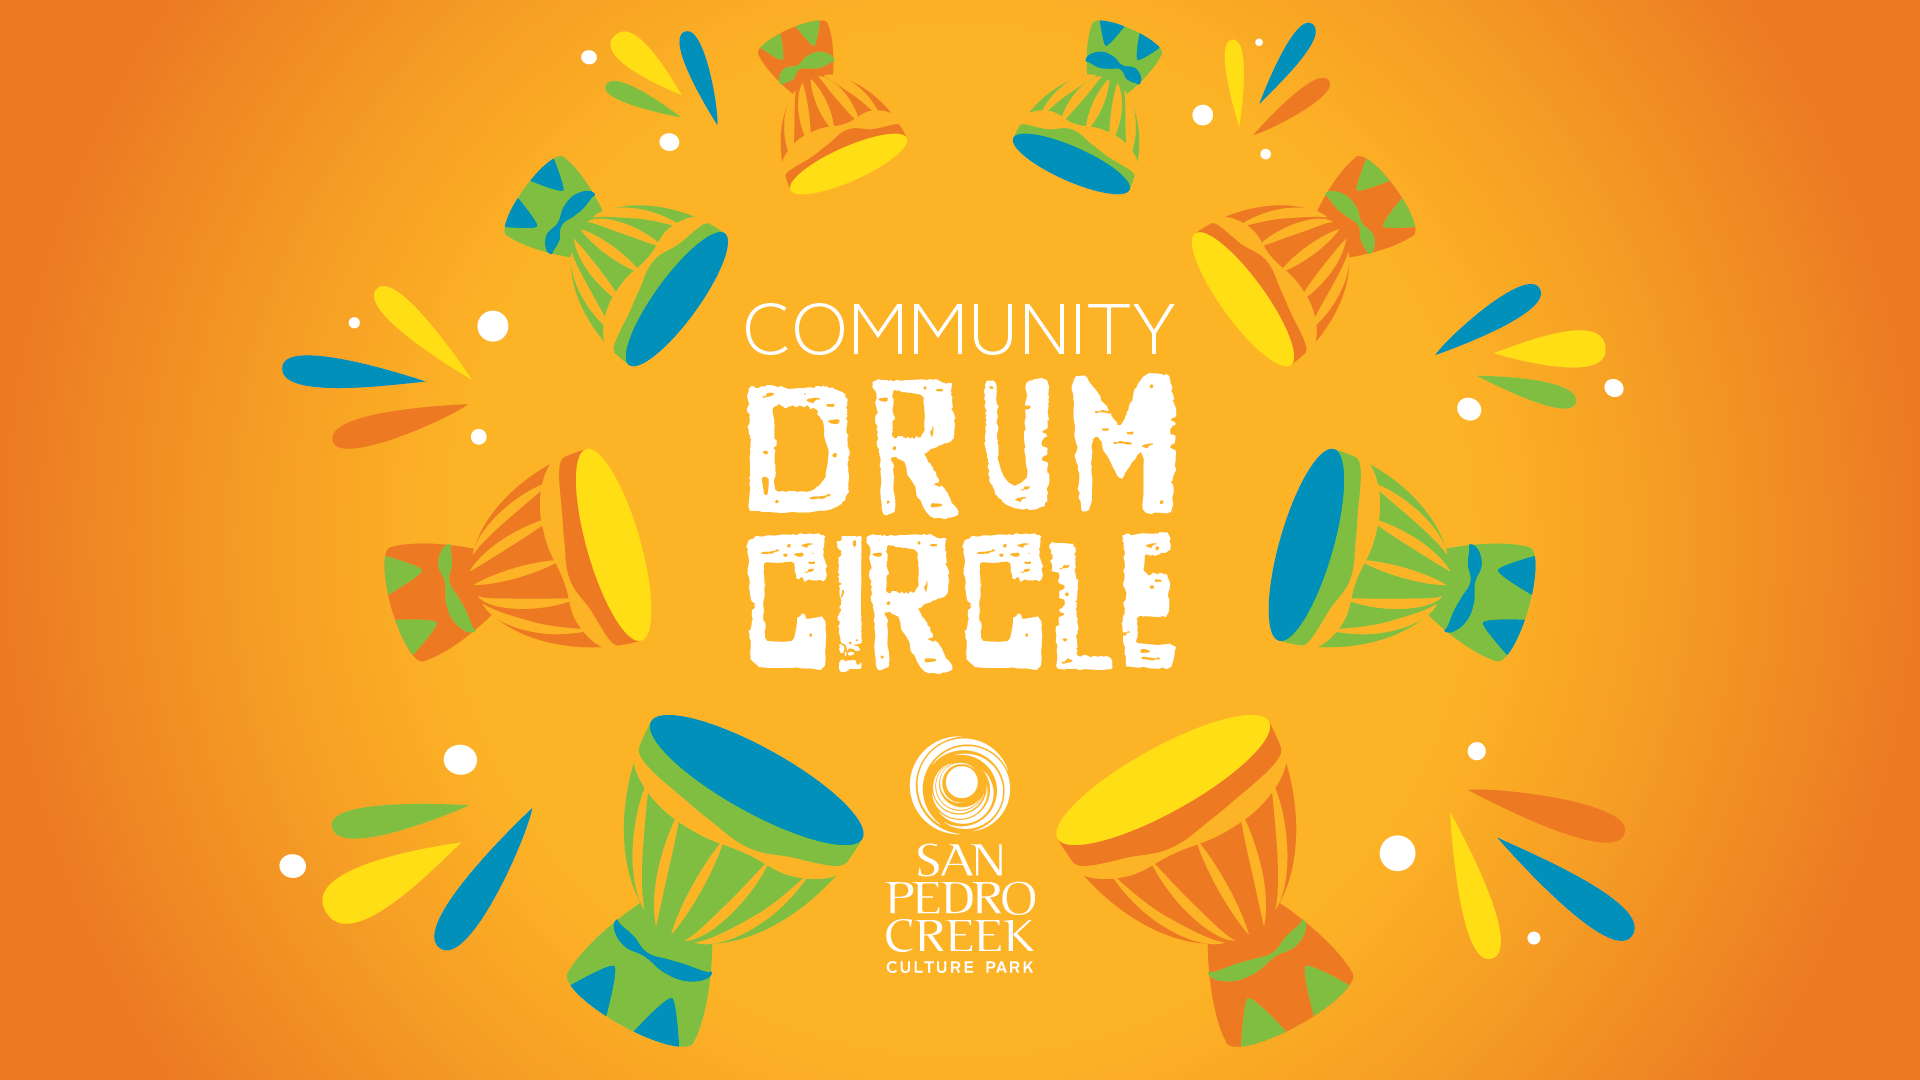 Drum Circle at San Pedro Creek Culture Park